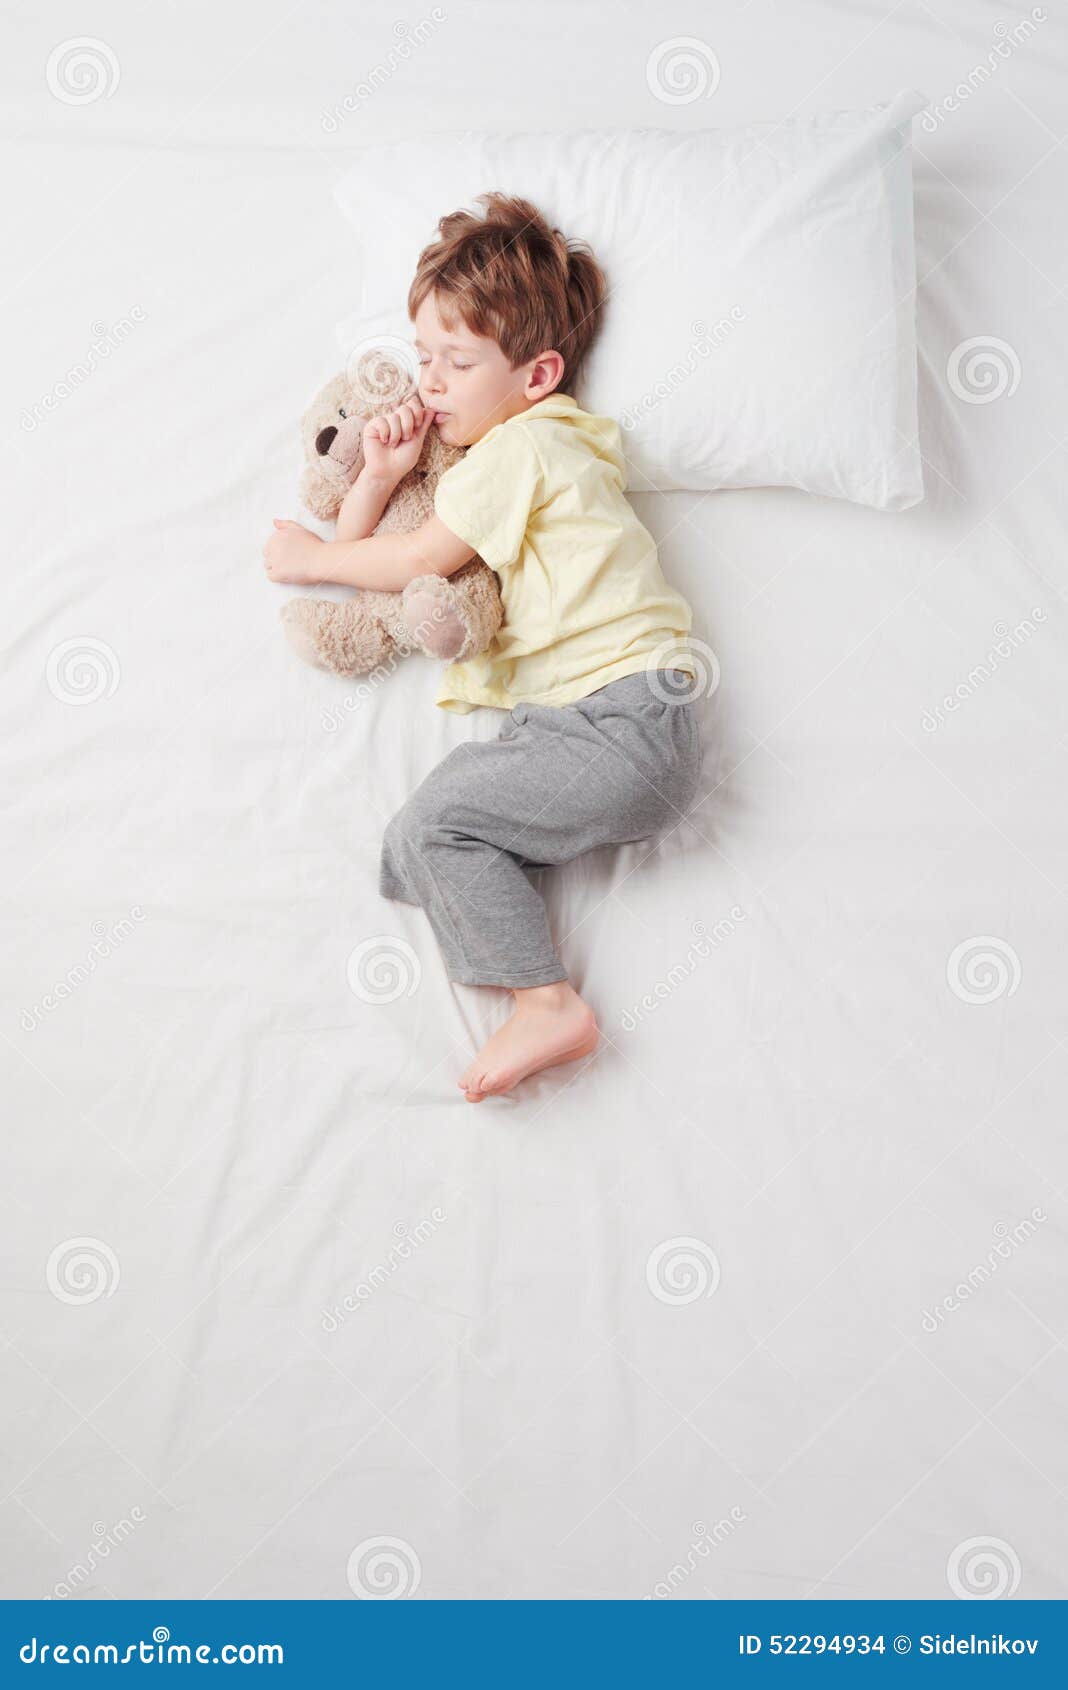 睡觉的婴儿姿势图片素材-编号26550217-图行天下